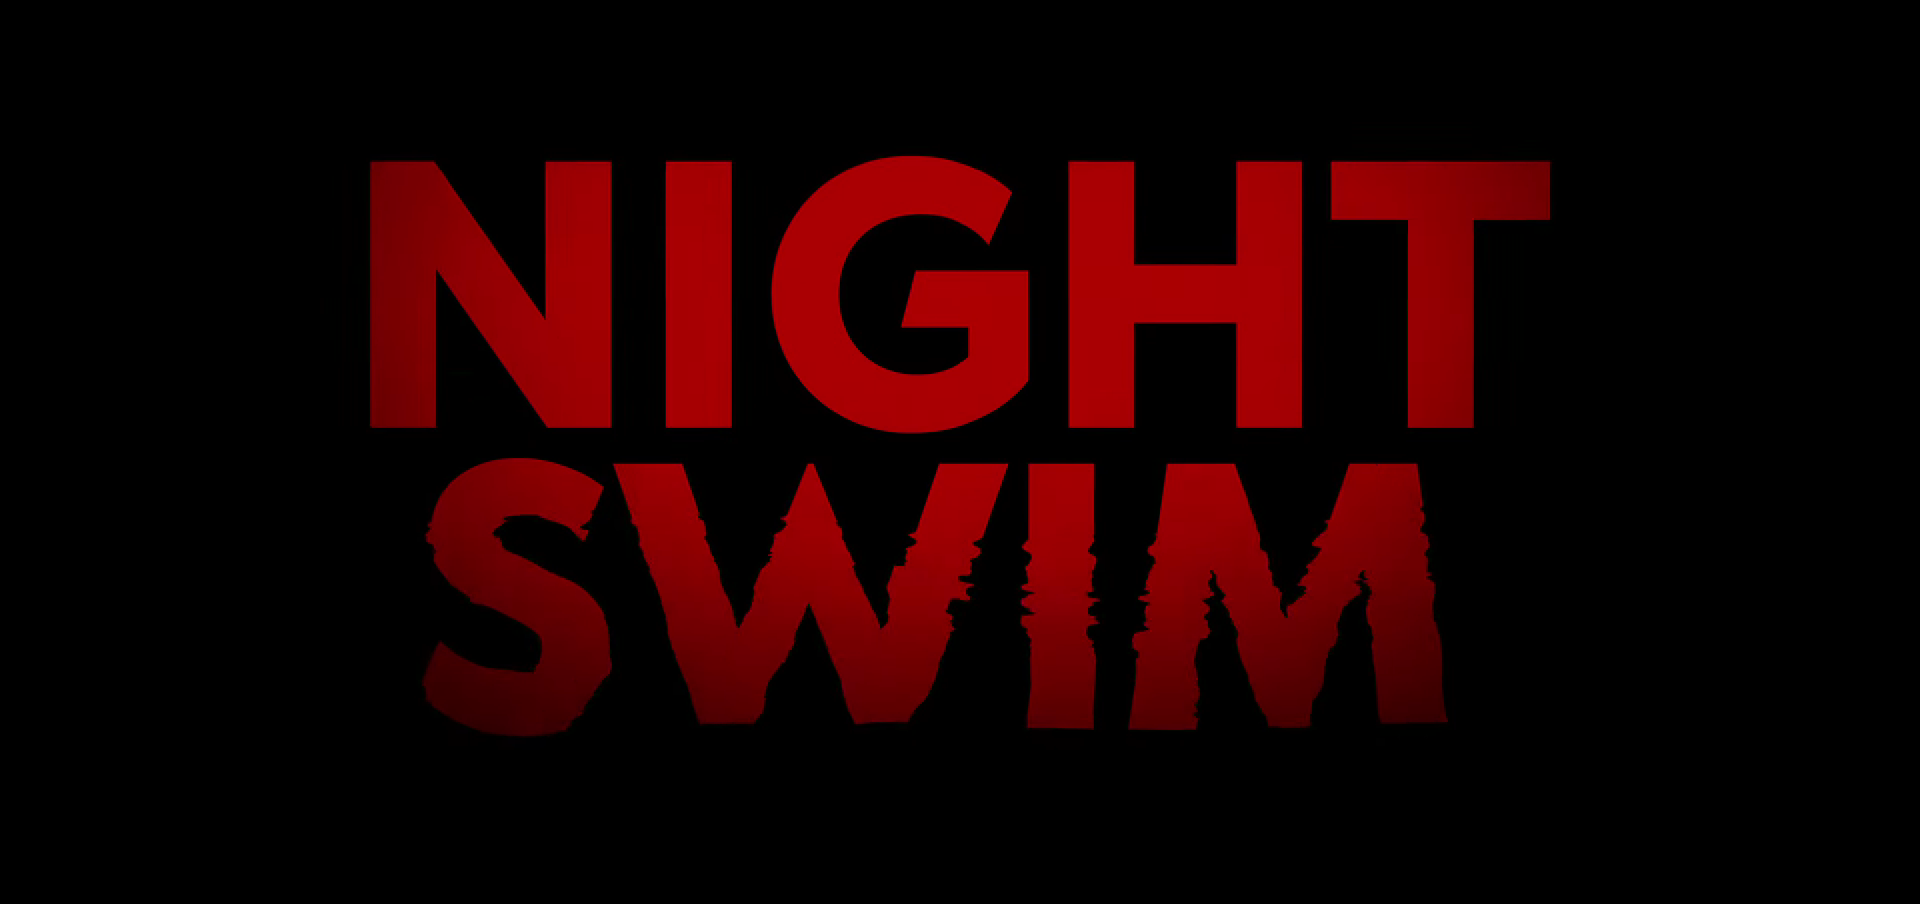 NIGHT SWIM - Phim kinh dị mới của James Wan tung trailer đầy sợ hãi đến “ngạt thở” 